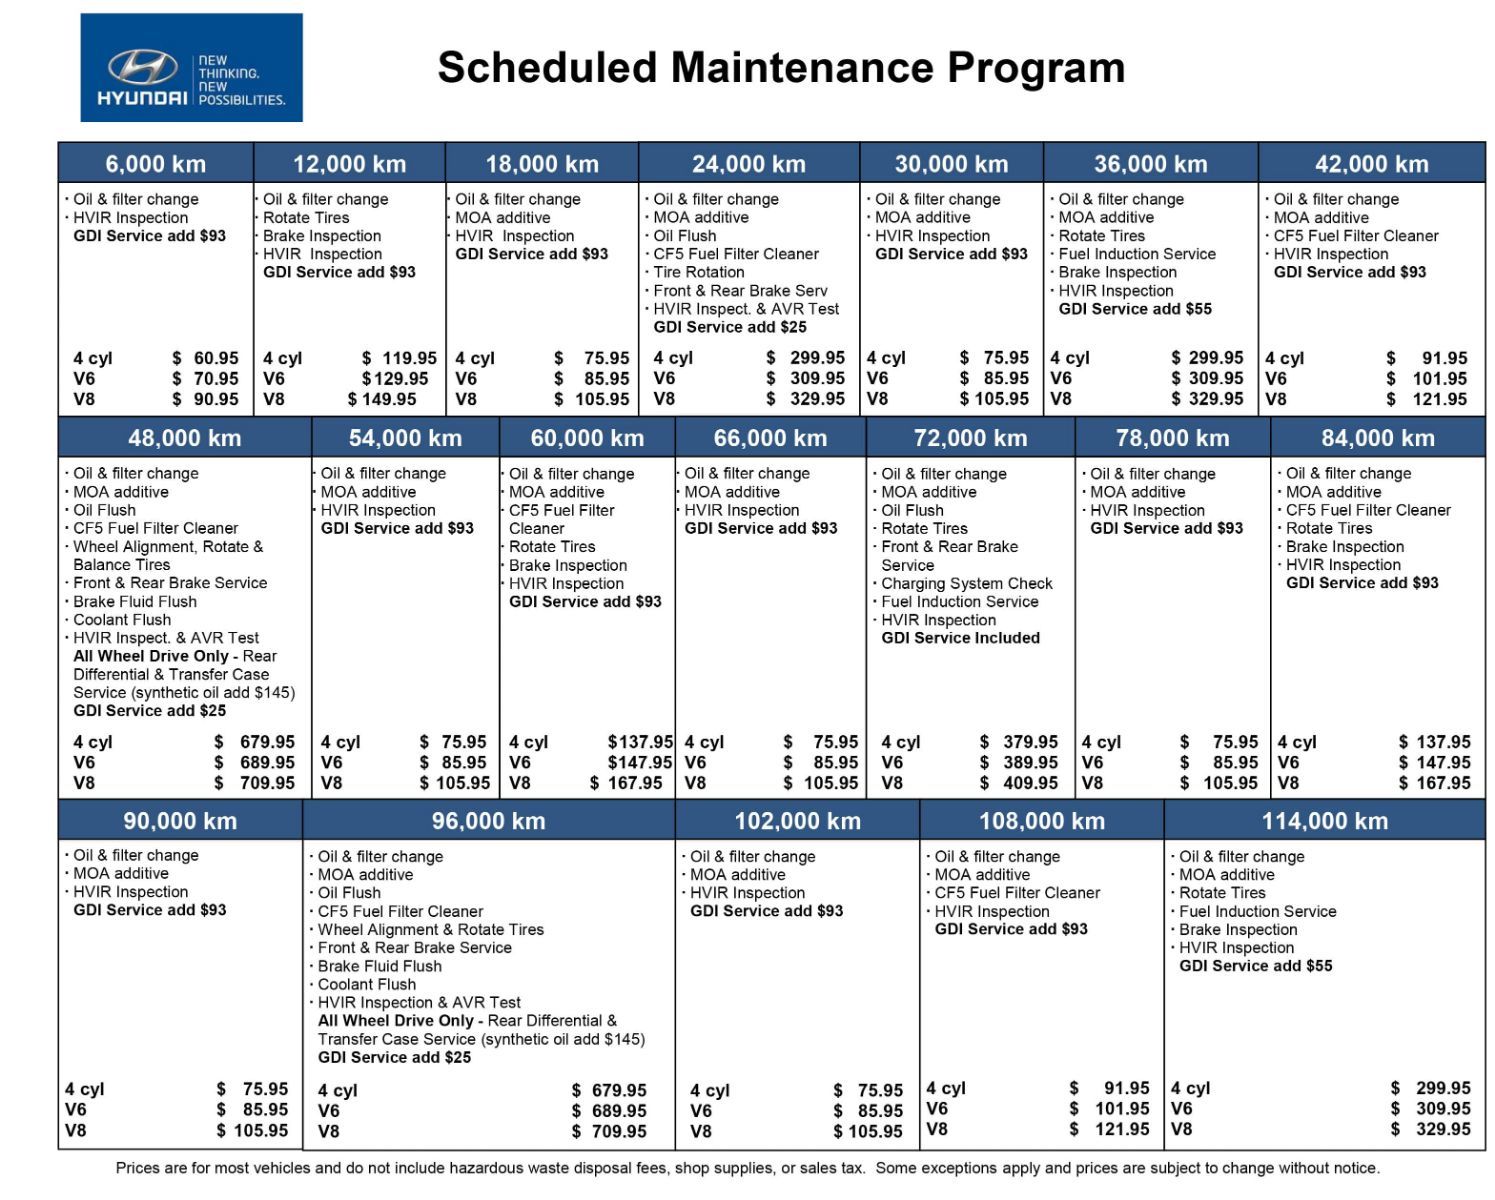 Hyundai of Regina - Scheduled Maintenance